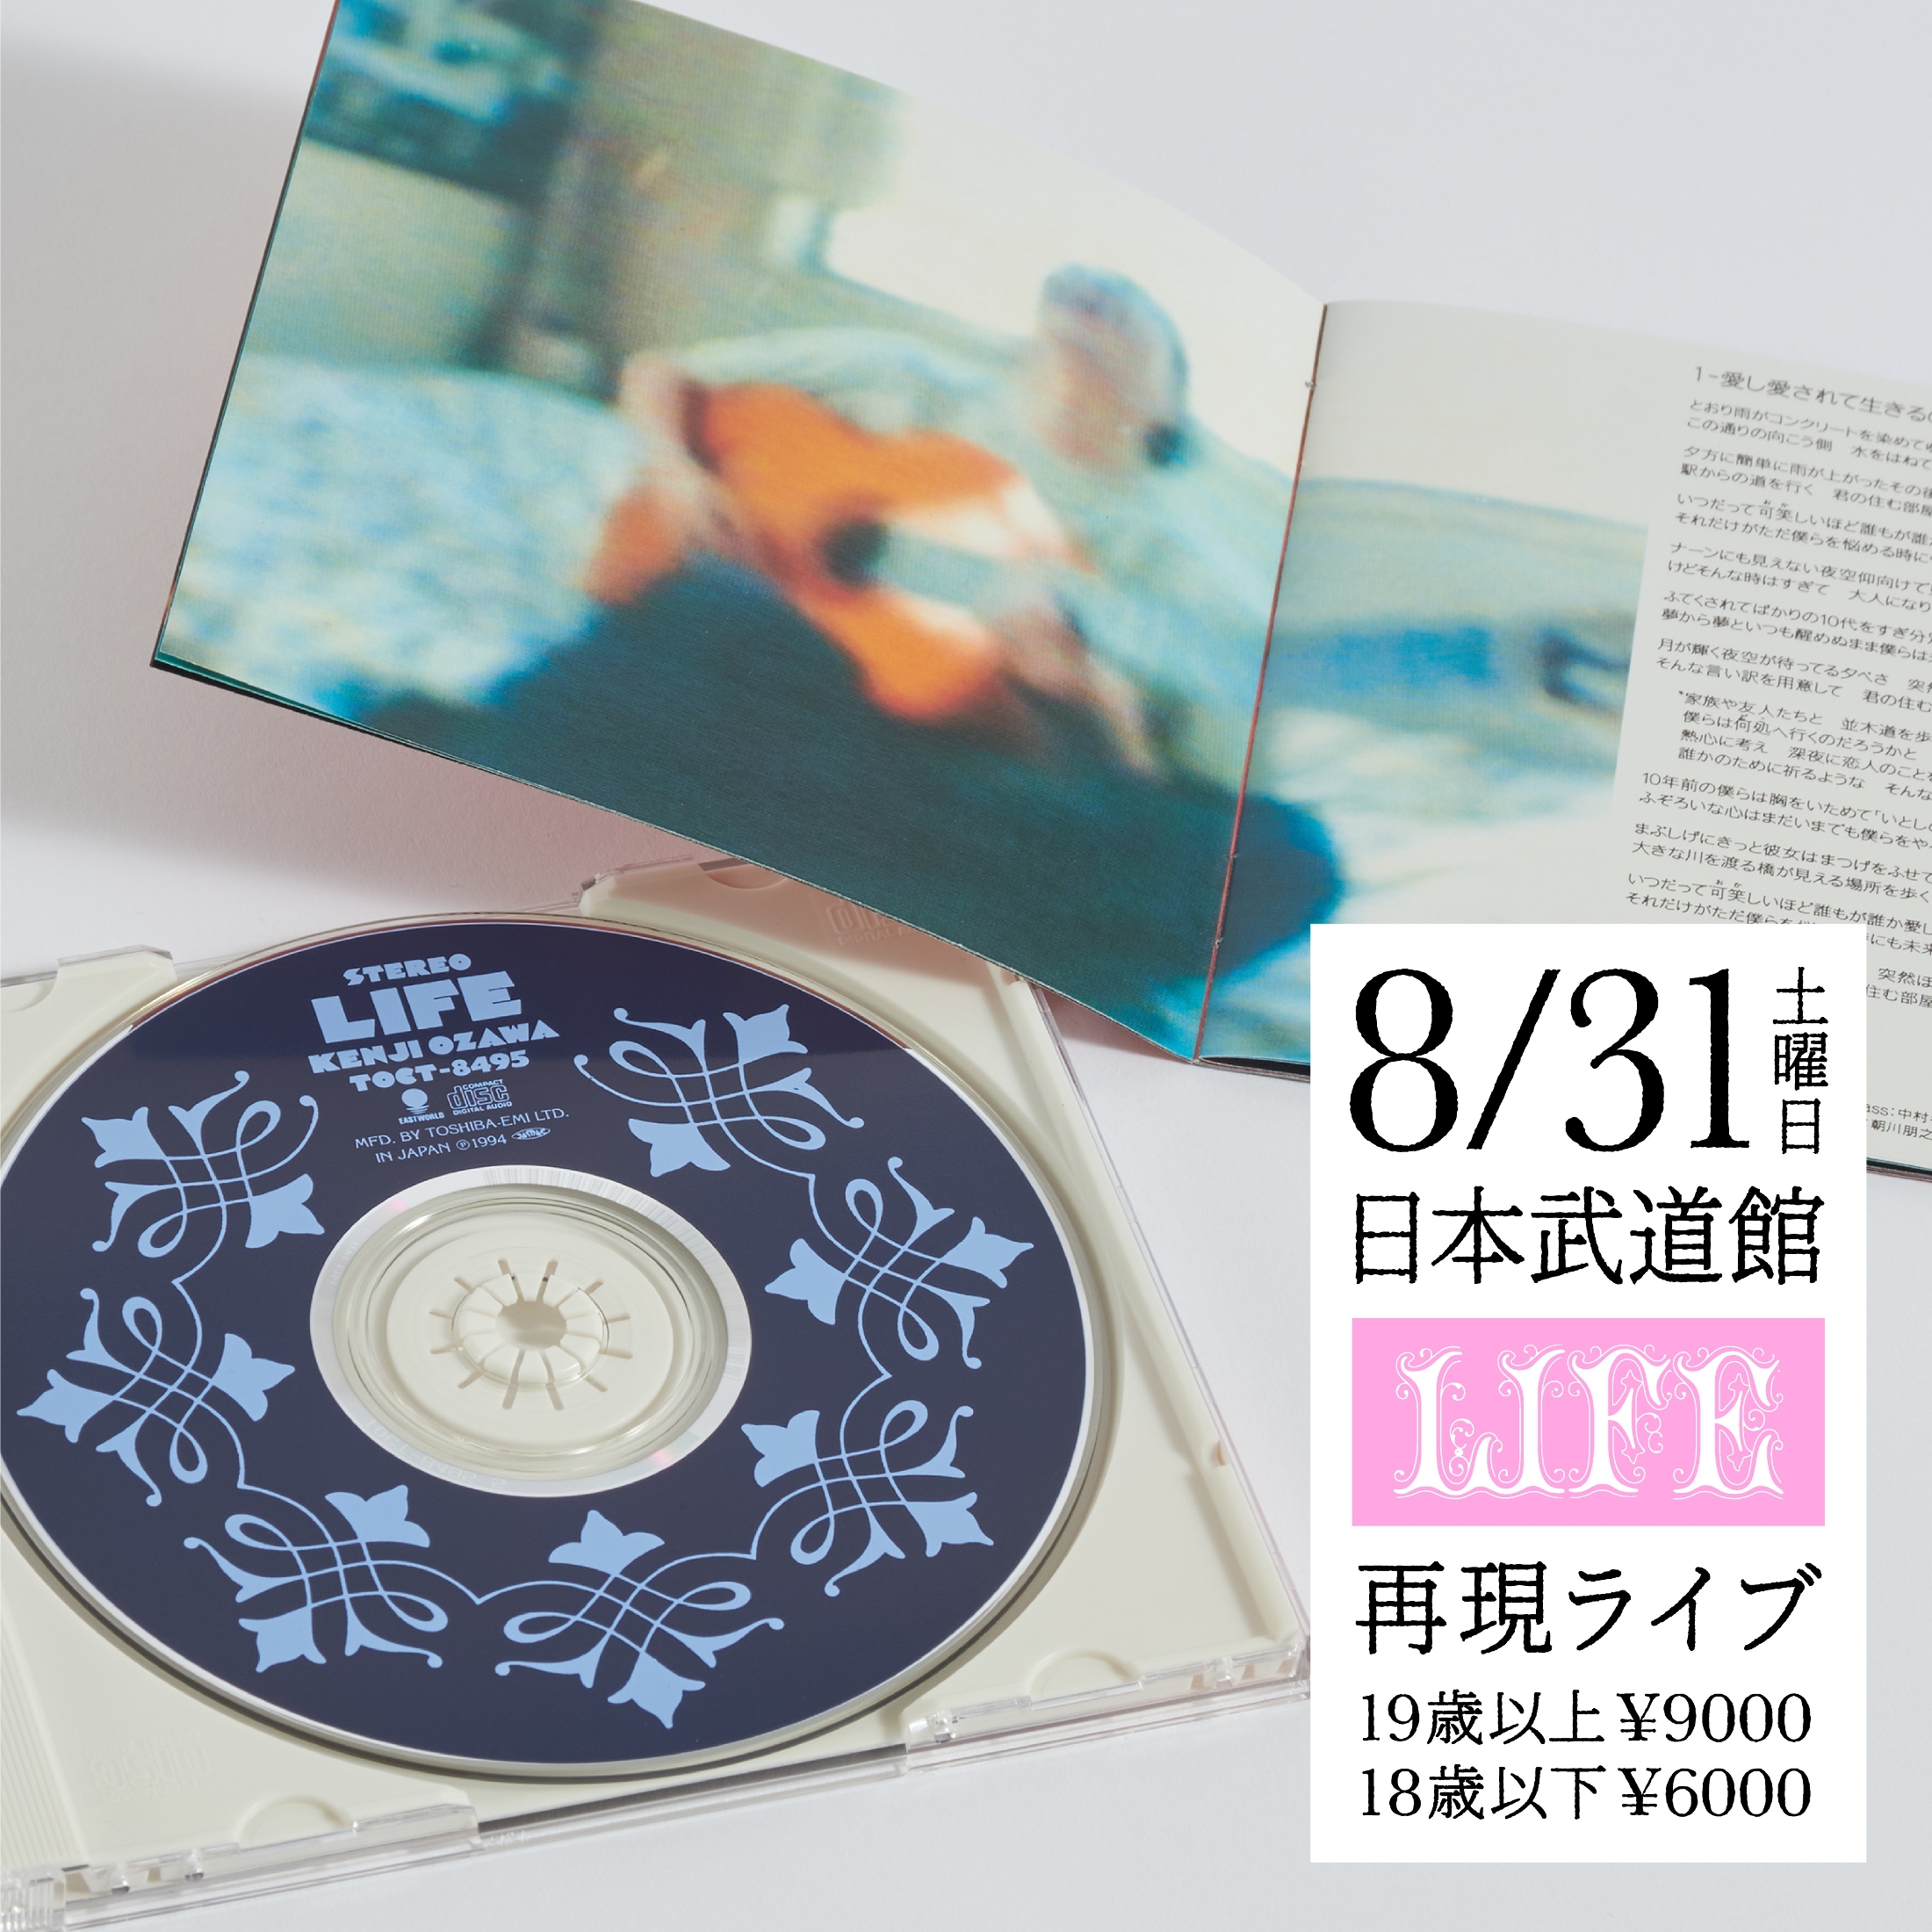 1994年の音を徹底再現、小沢健二が2ndアルバム『LIFE』30周年記念 